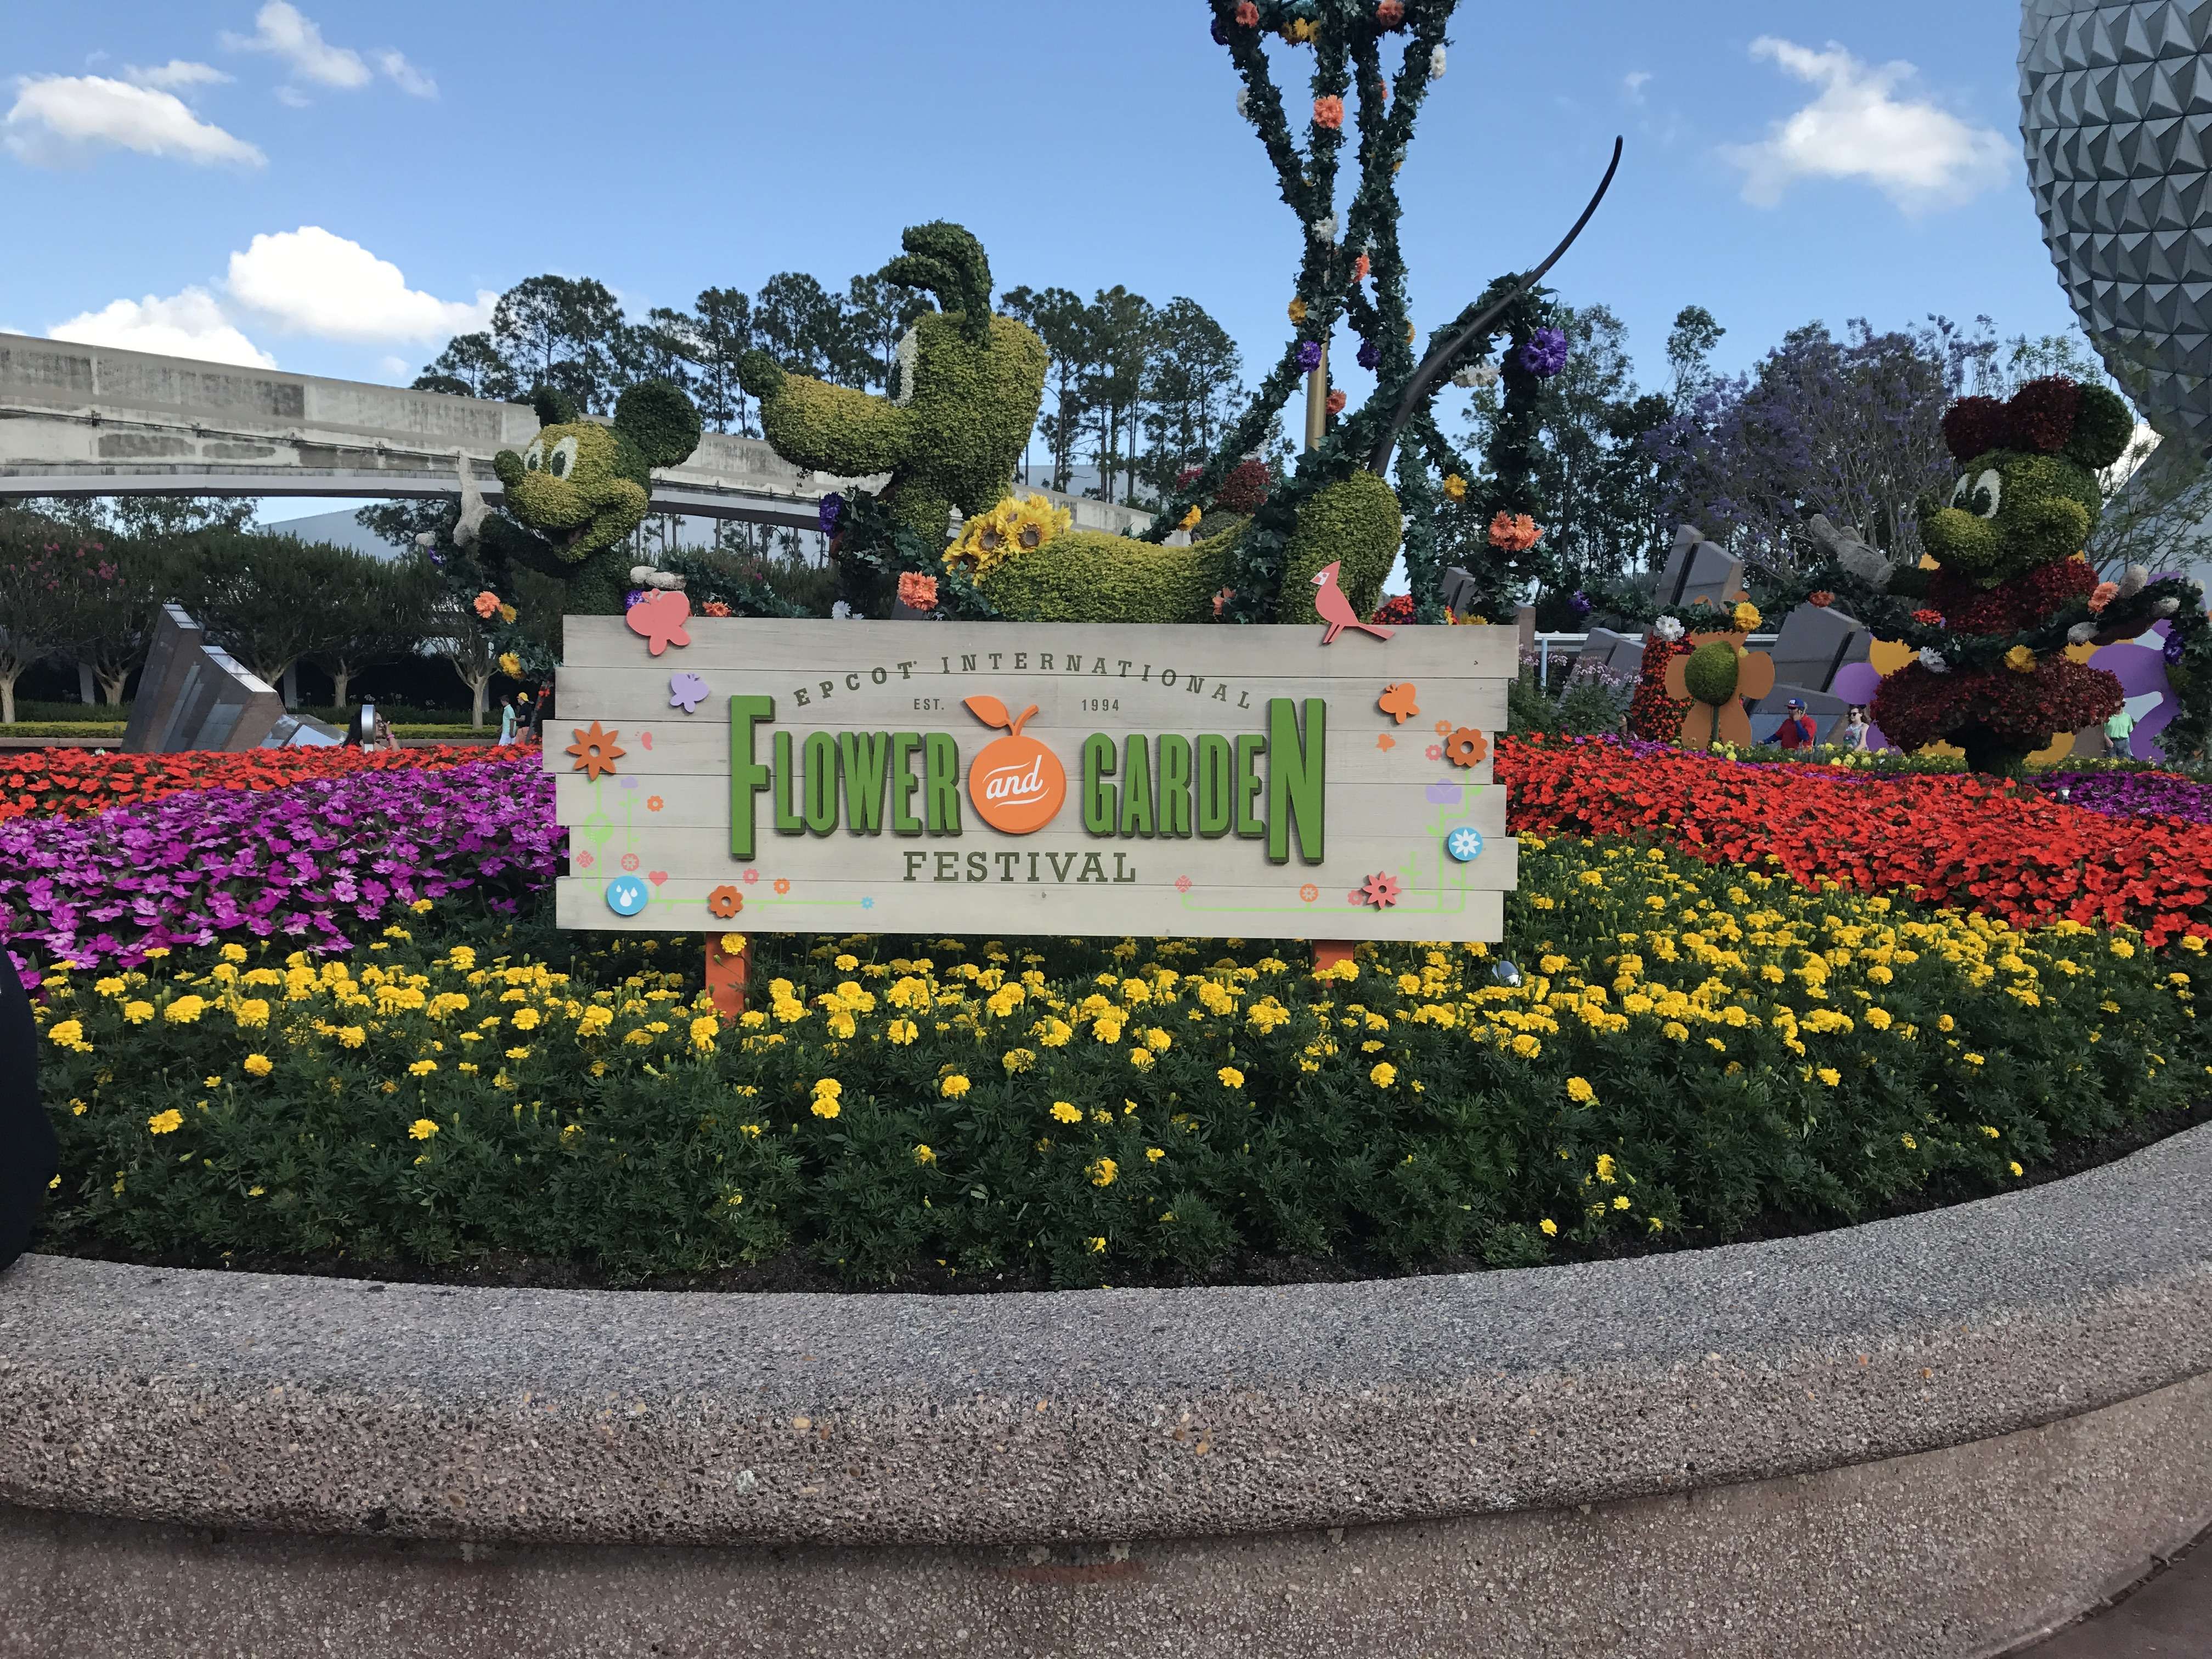 Día 11: martes 16 de mayo: Magic Kingdom y Epcot - Dos semanas en Orlando: Walt Disney World (en construcción) (20)